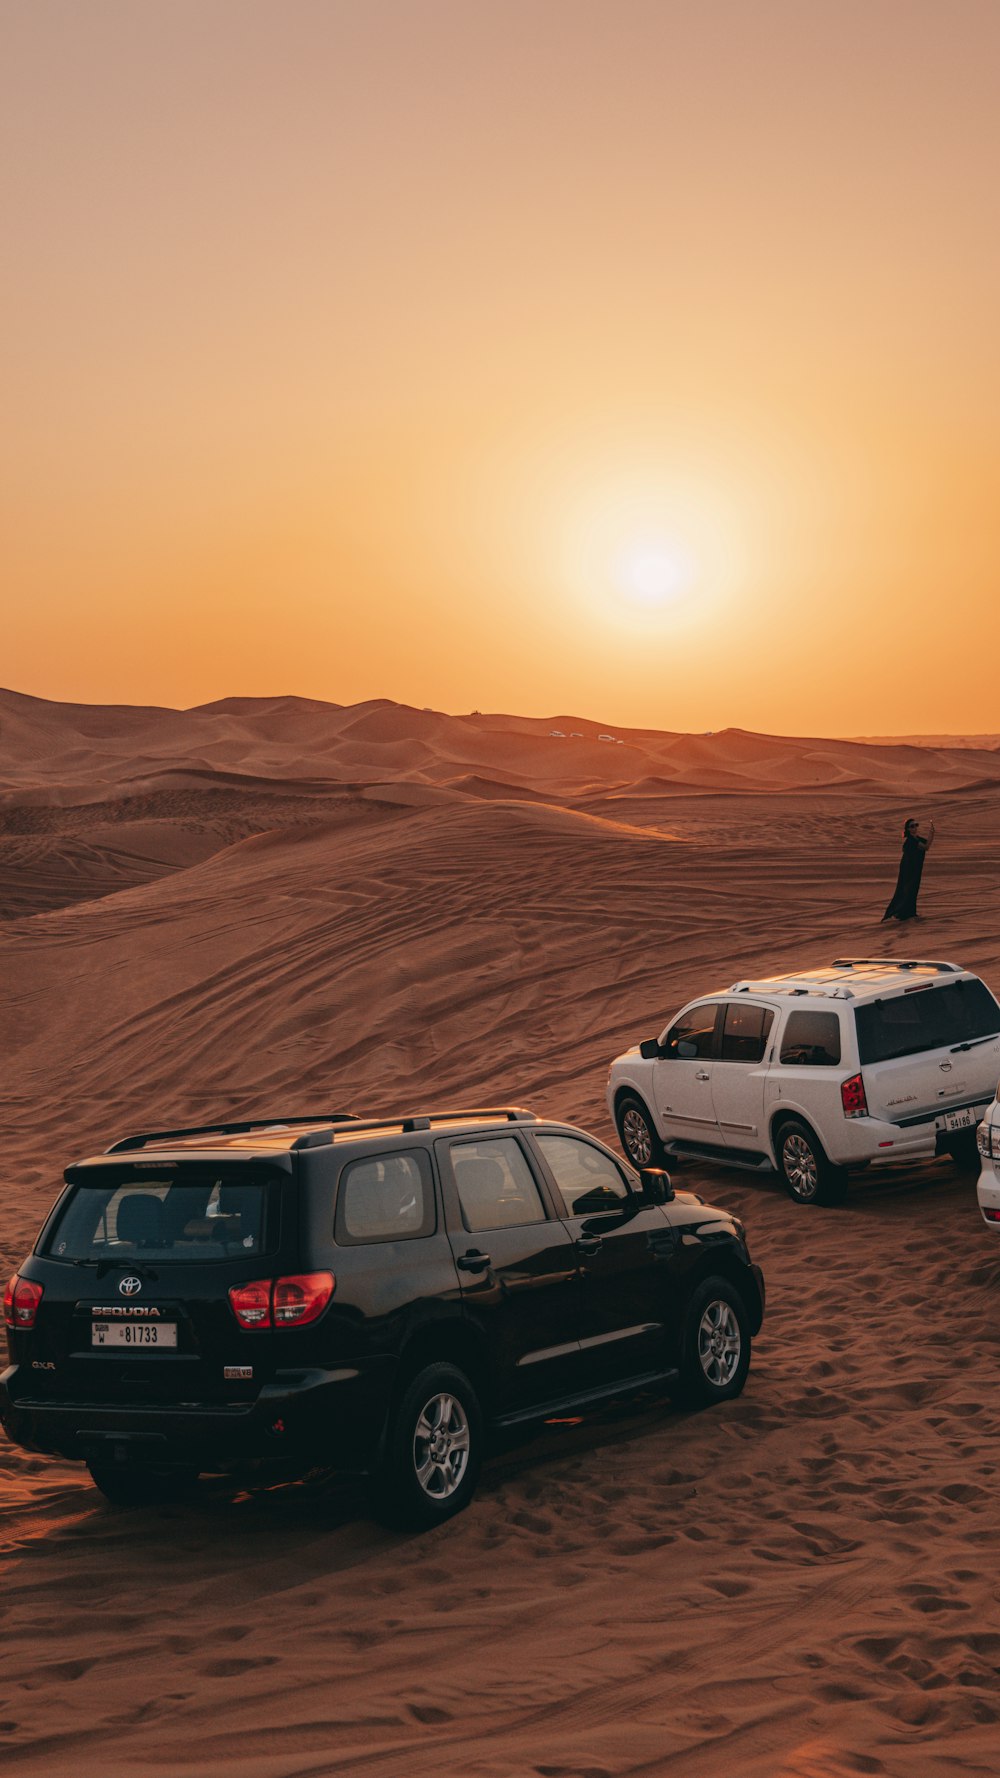 砂漠に駐車した車のグループ